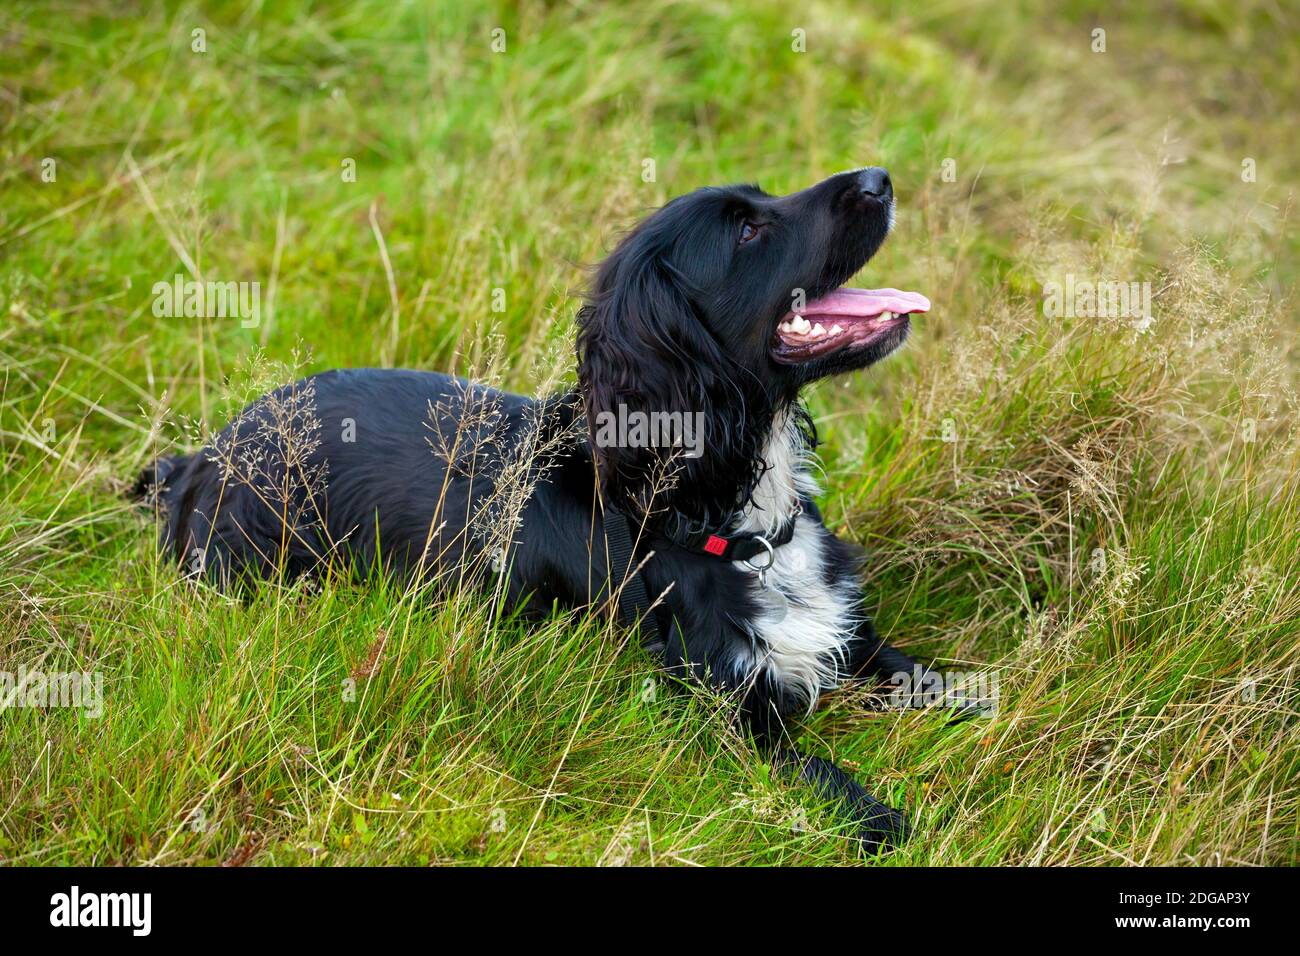 Cocker lavoro spaniel cane con capelli neri e petto bianco giacente in erba guardando in su con l'espressione di allarme sul suo viso. Foto Stock